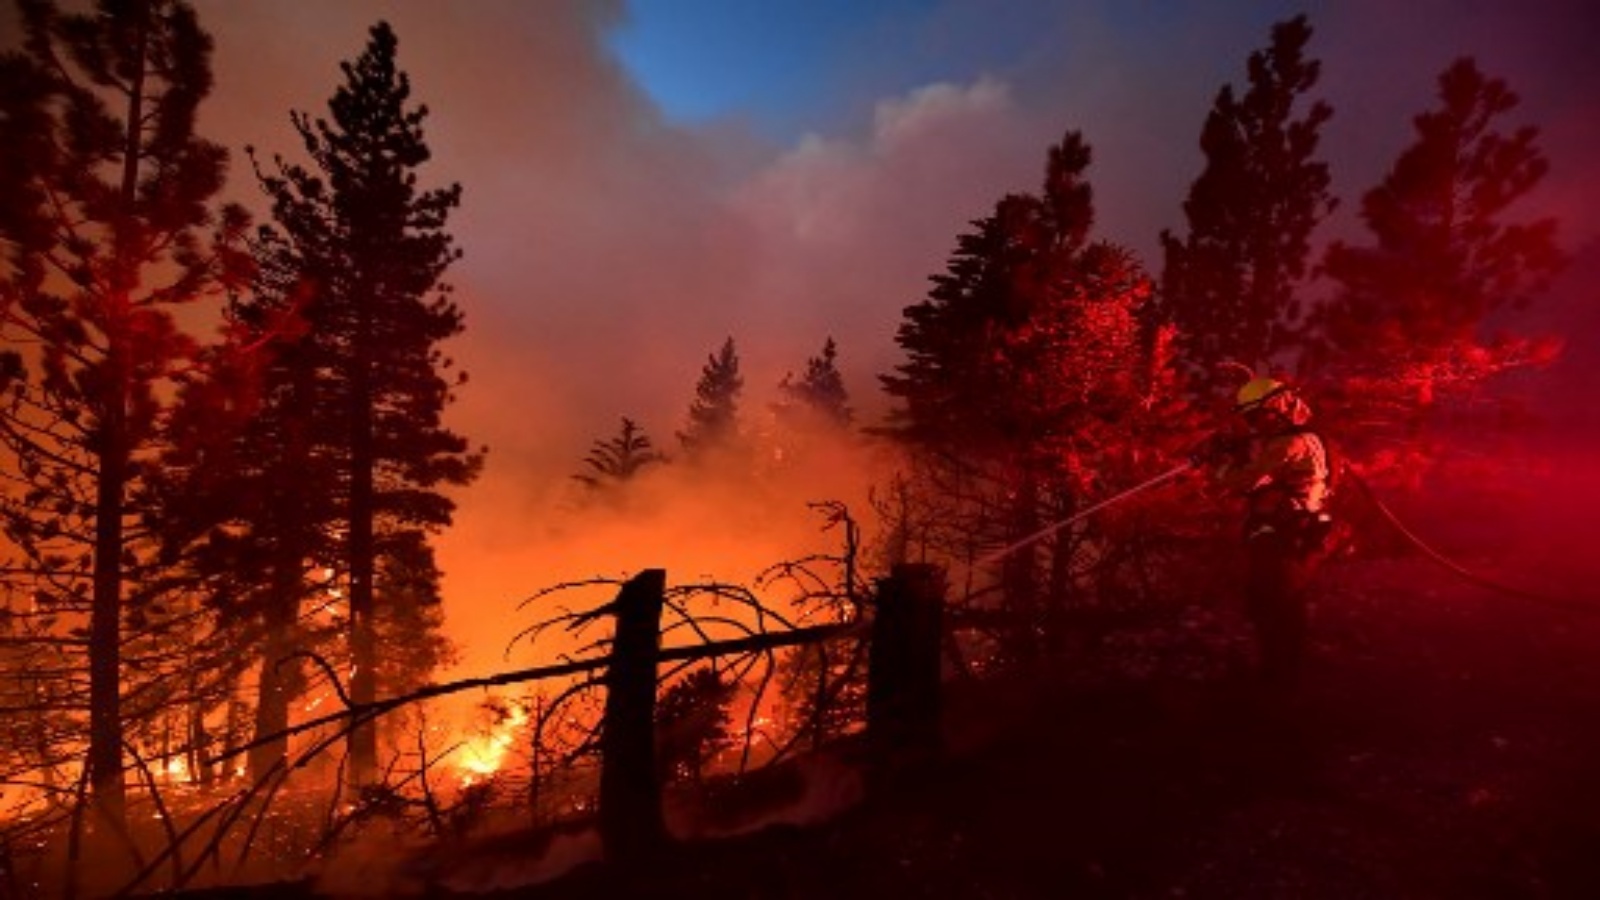 رجال الإطفاء يعملون في حريق بالقرب من سيدار سبرينغز في غابة أنجيليس الوطنية في 21 سبتمبر 2020 في لوس أنجلوس ، كاليفورنيا